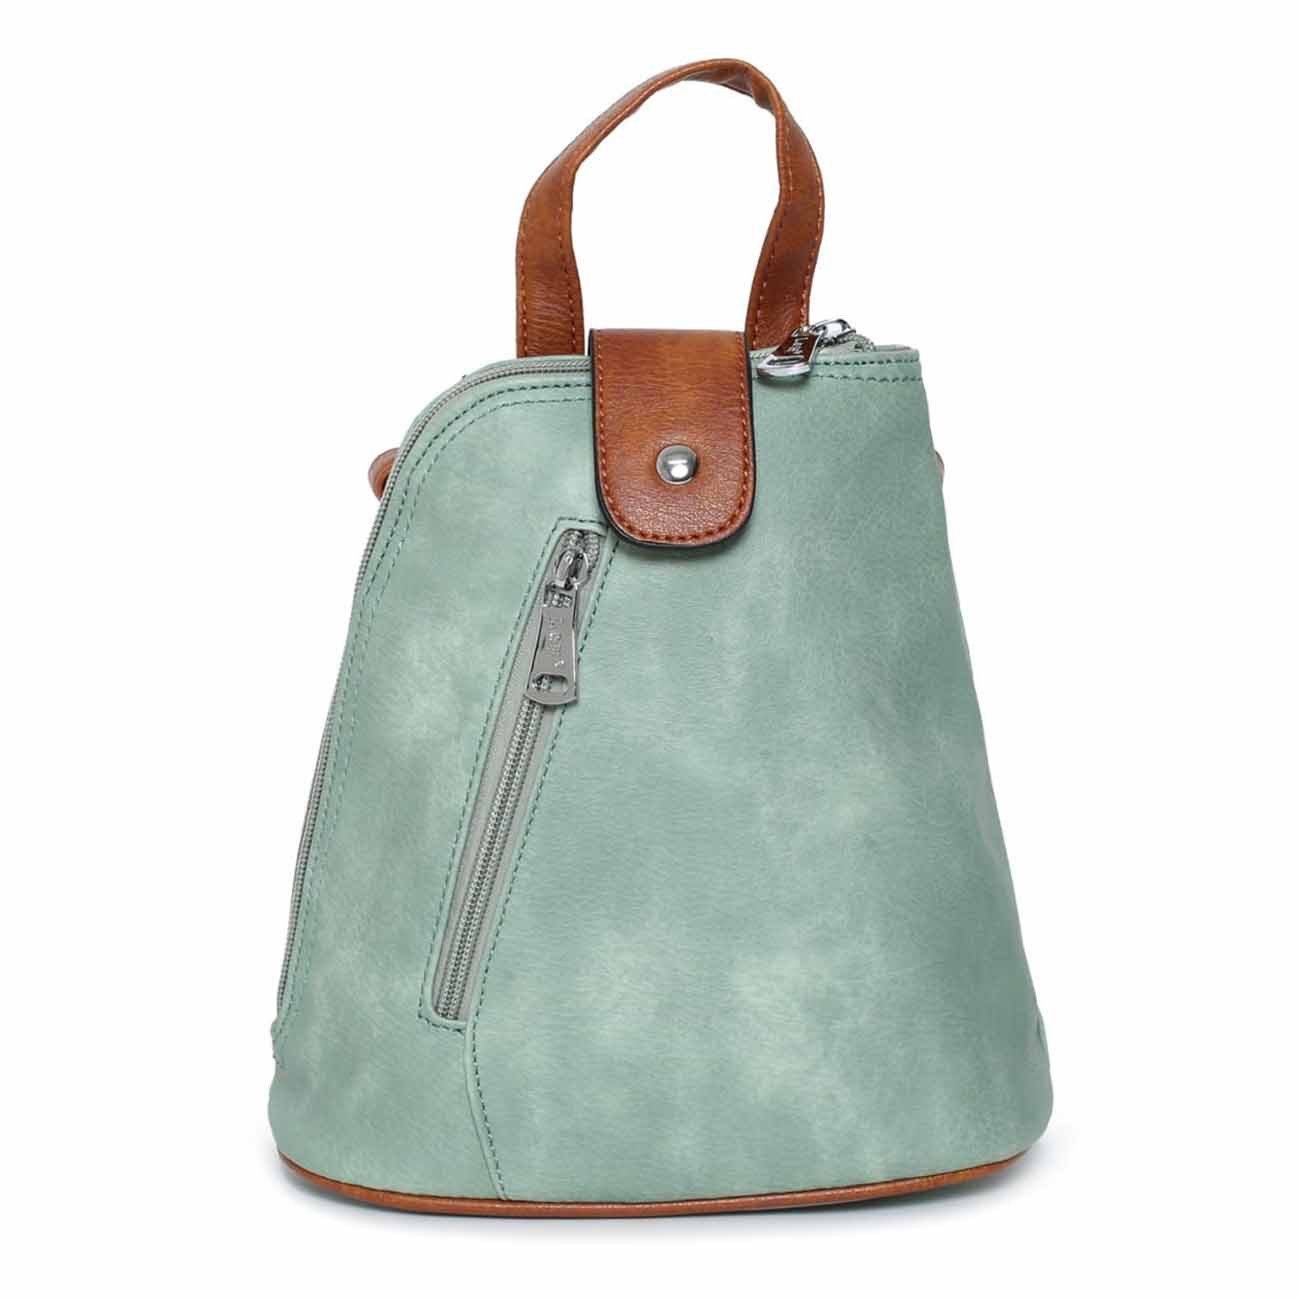 ITALYSHOP24 Rucksack Damen Tasche Schultertasche Crossover, kleiner Rucksack, Umhängetasche / Handtasche tragbar